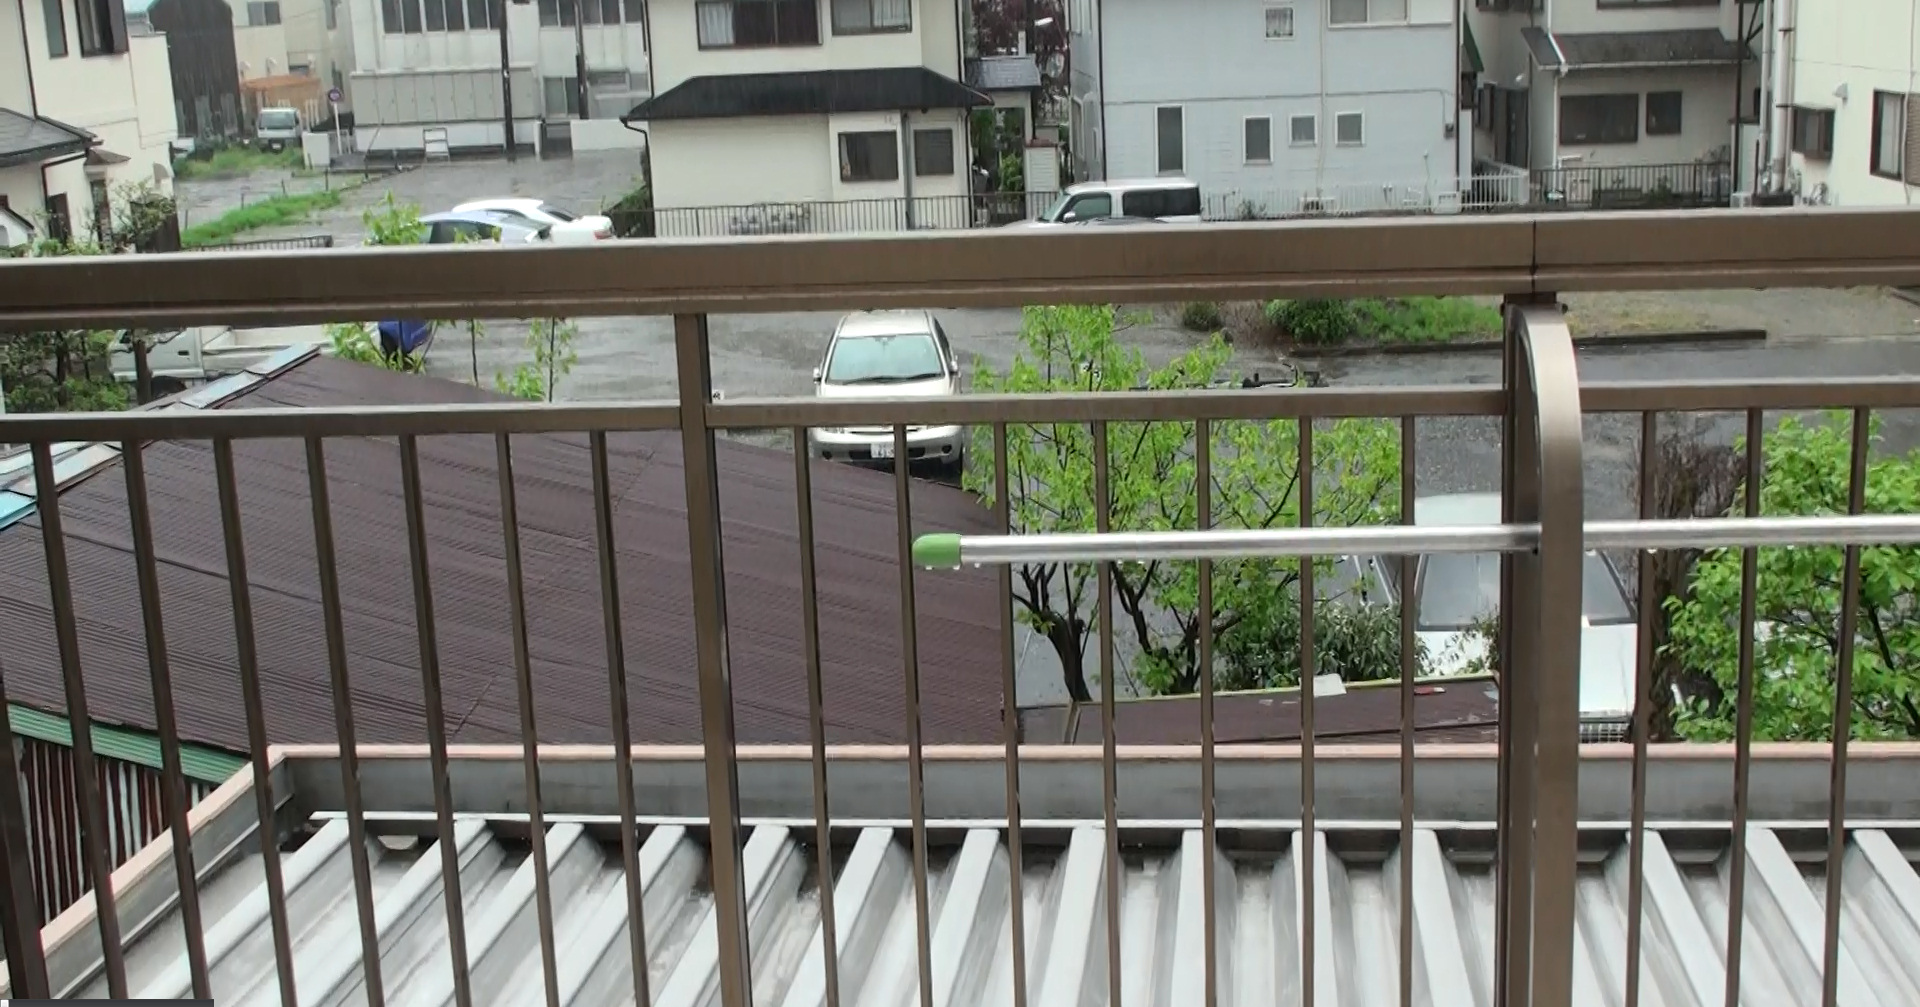 ハイビジョンビデオカメラで撮影した動画。雨